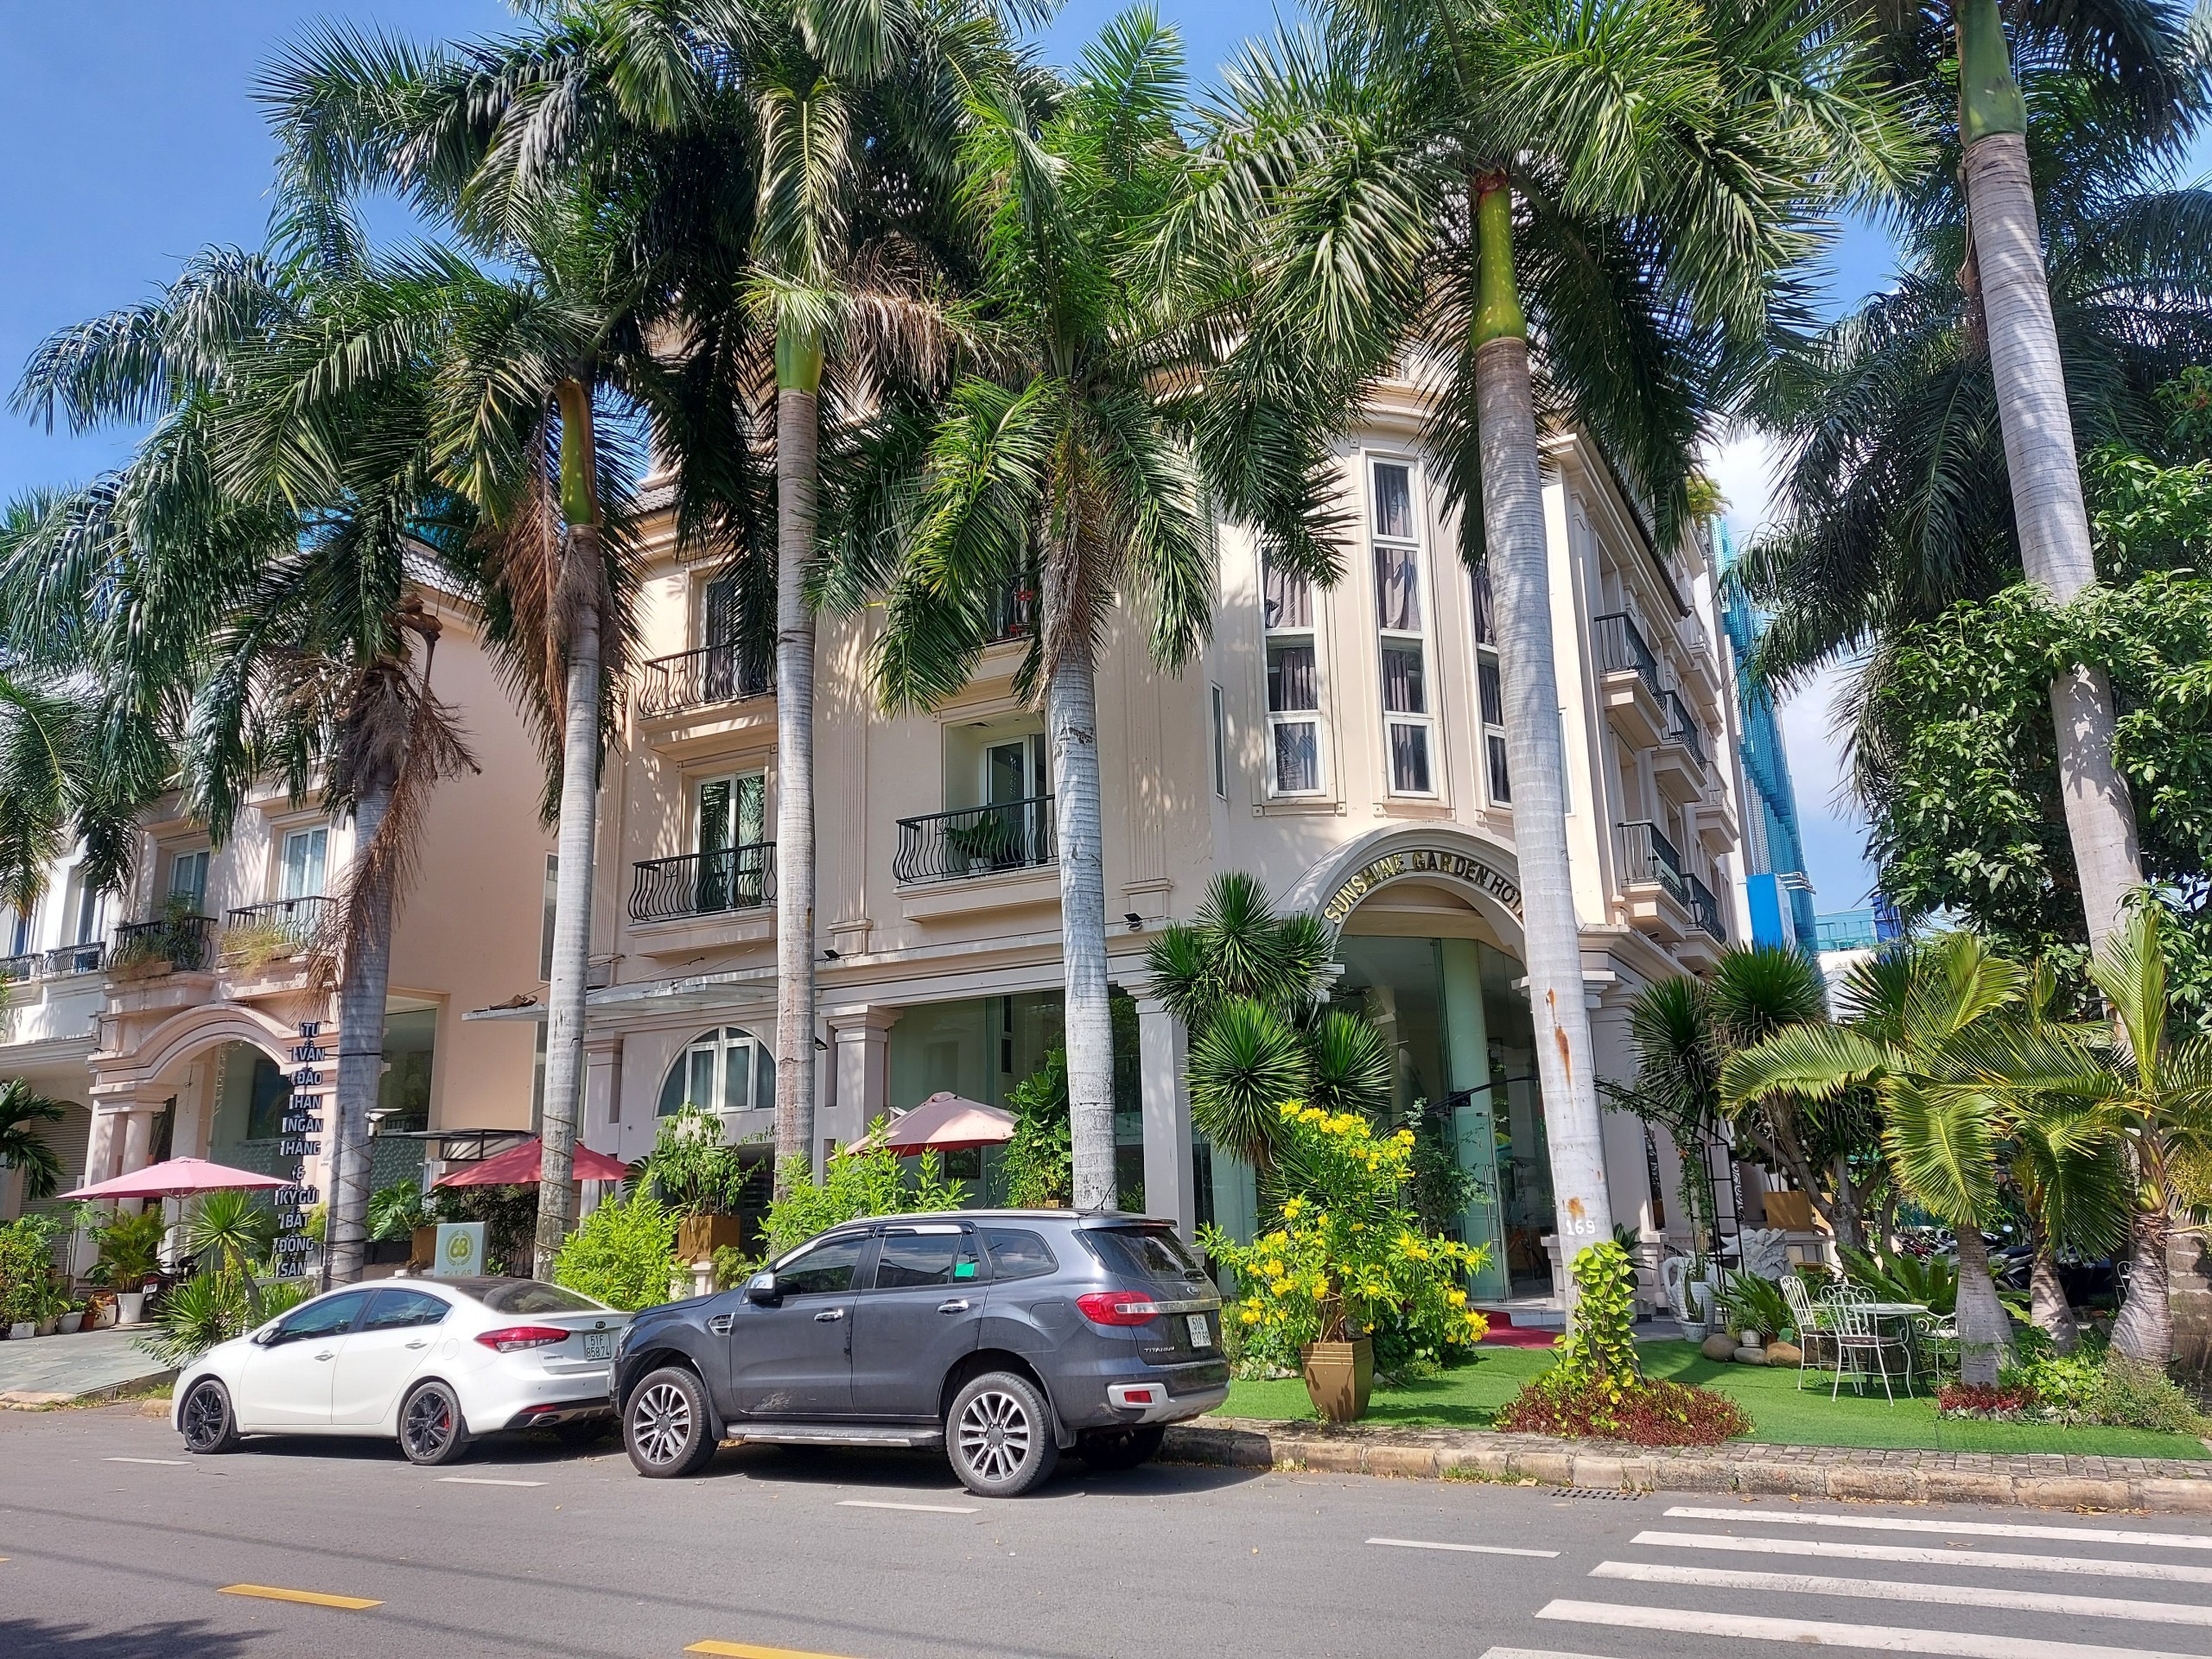 Khách sạn Nam Thông Phú Mỹ Hưng, Quận 7